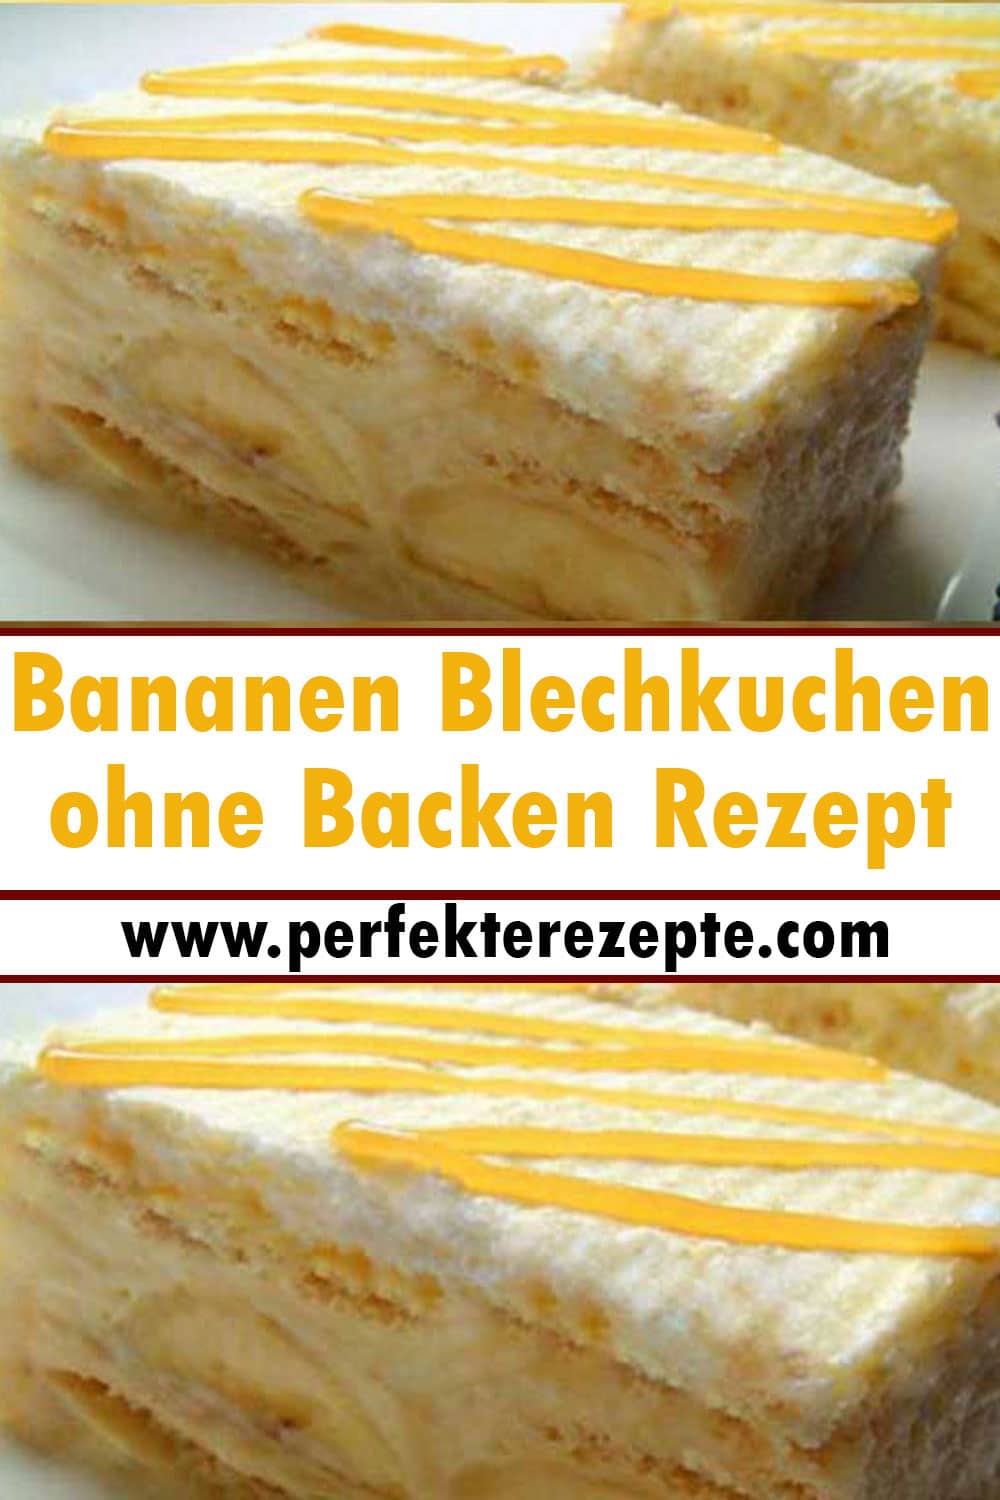 Bananen Blechkuchen ohne Backen Rezept